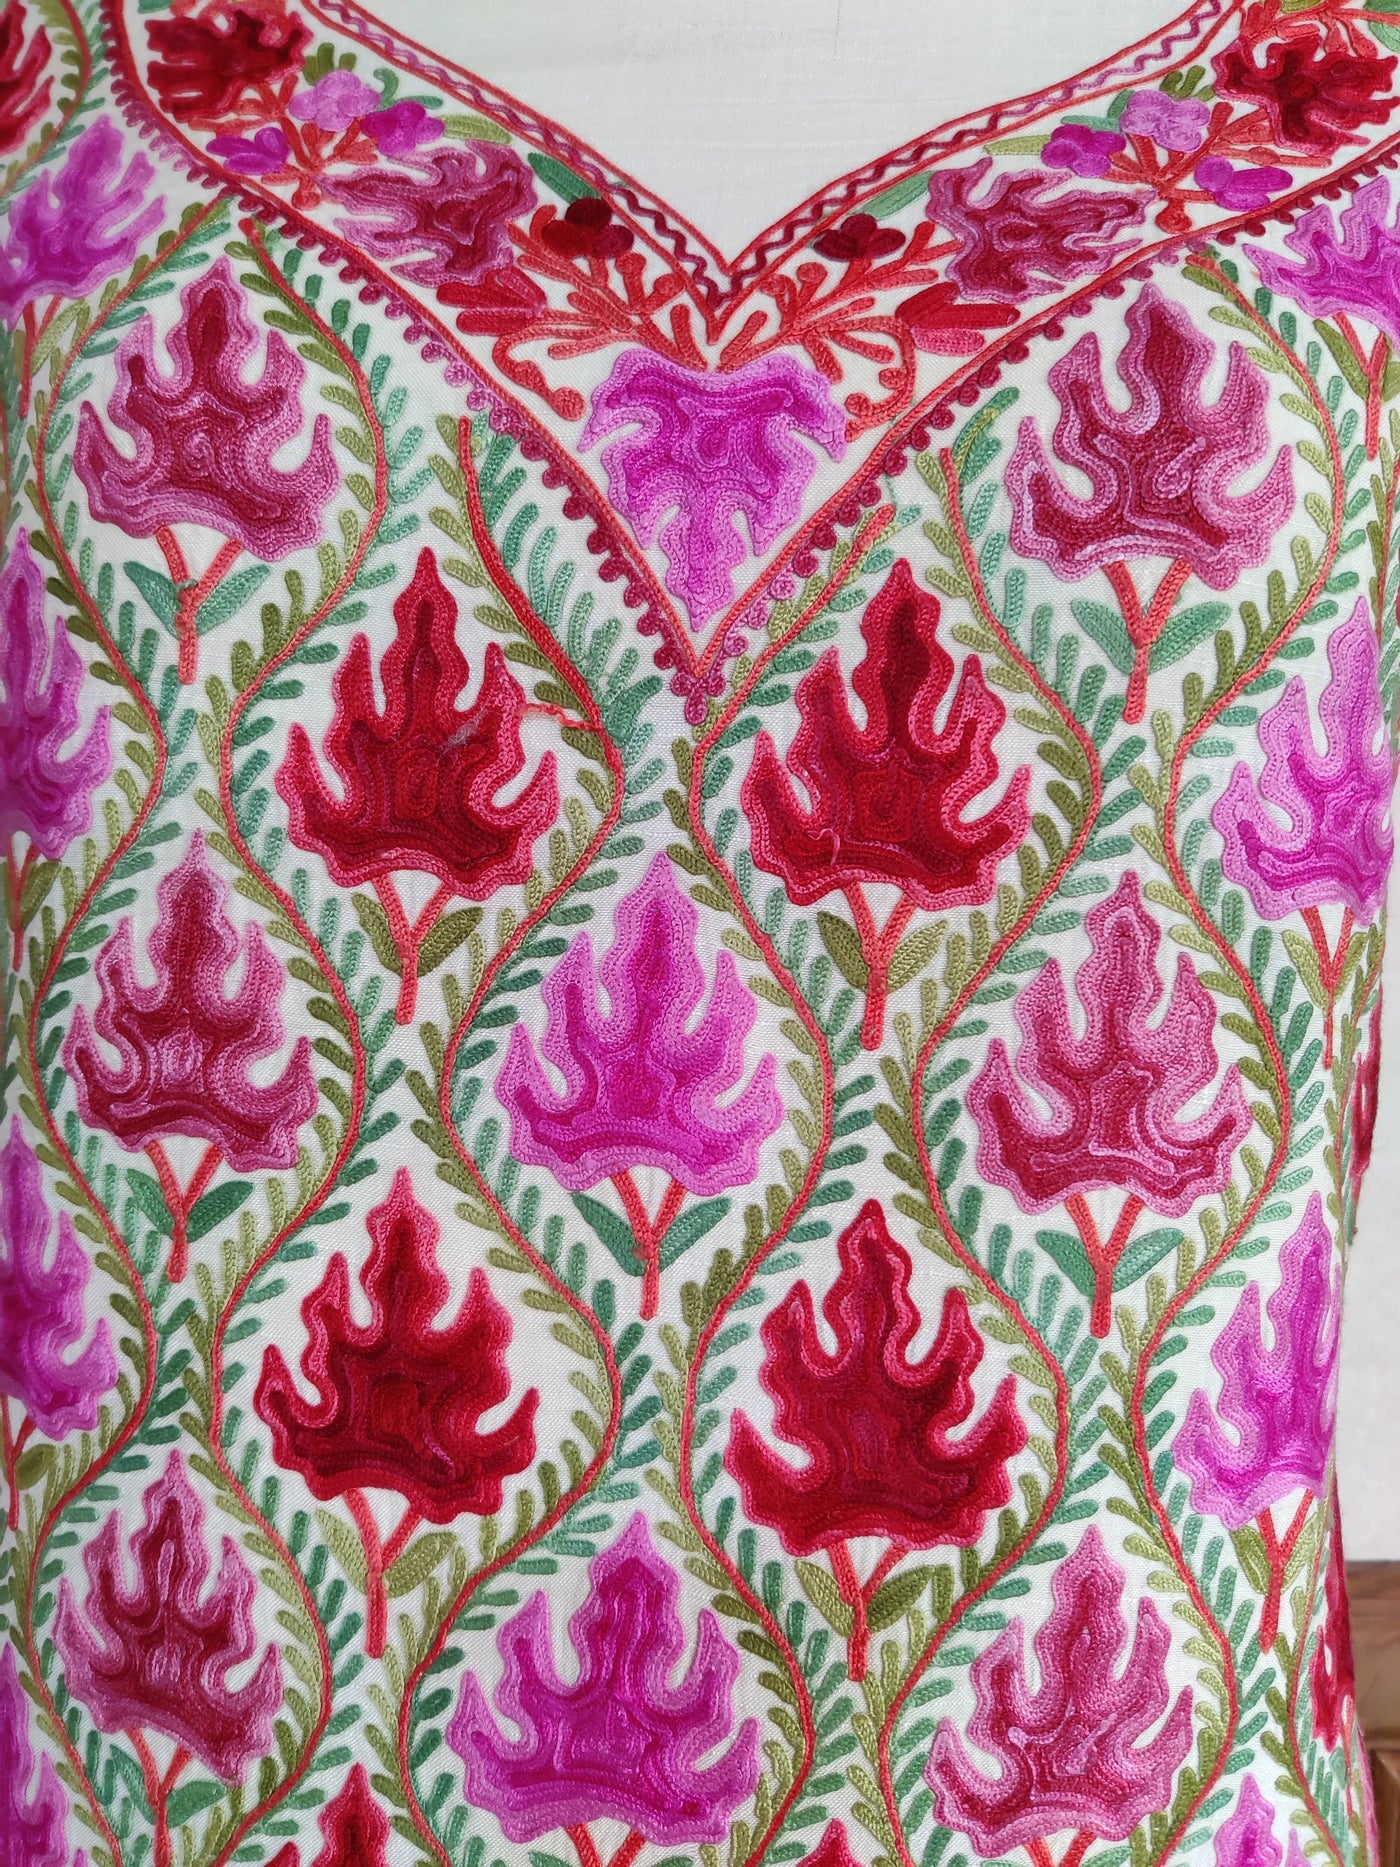 Tassar Silk Kashmiri Suit Summer With Floral Embroidery Summer Suit KashmKari Buy Kashmiri Summer Suit online with Floral Embroidery at Best Price On Kashmir Thread 